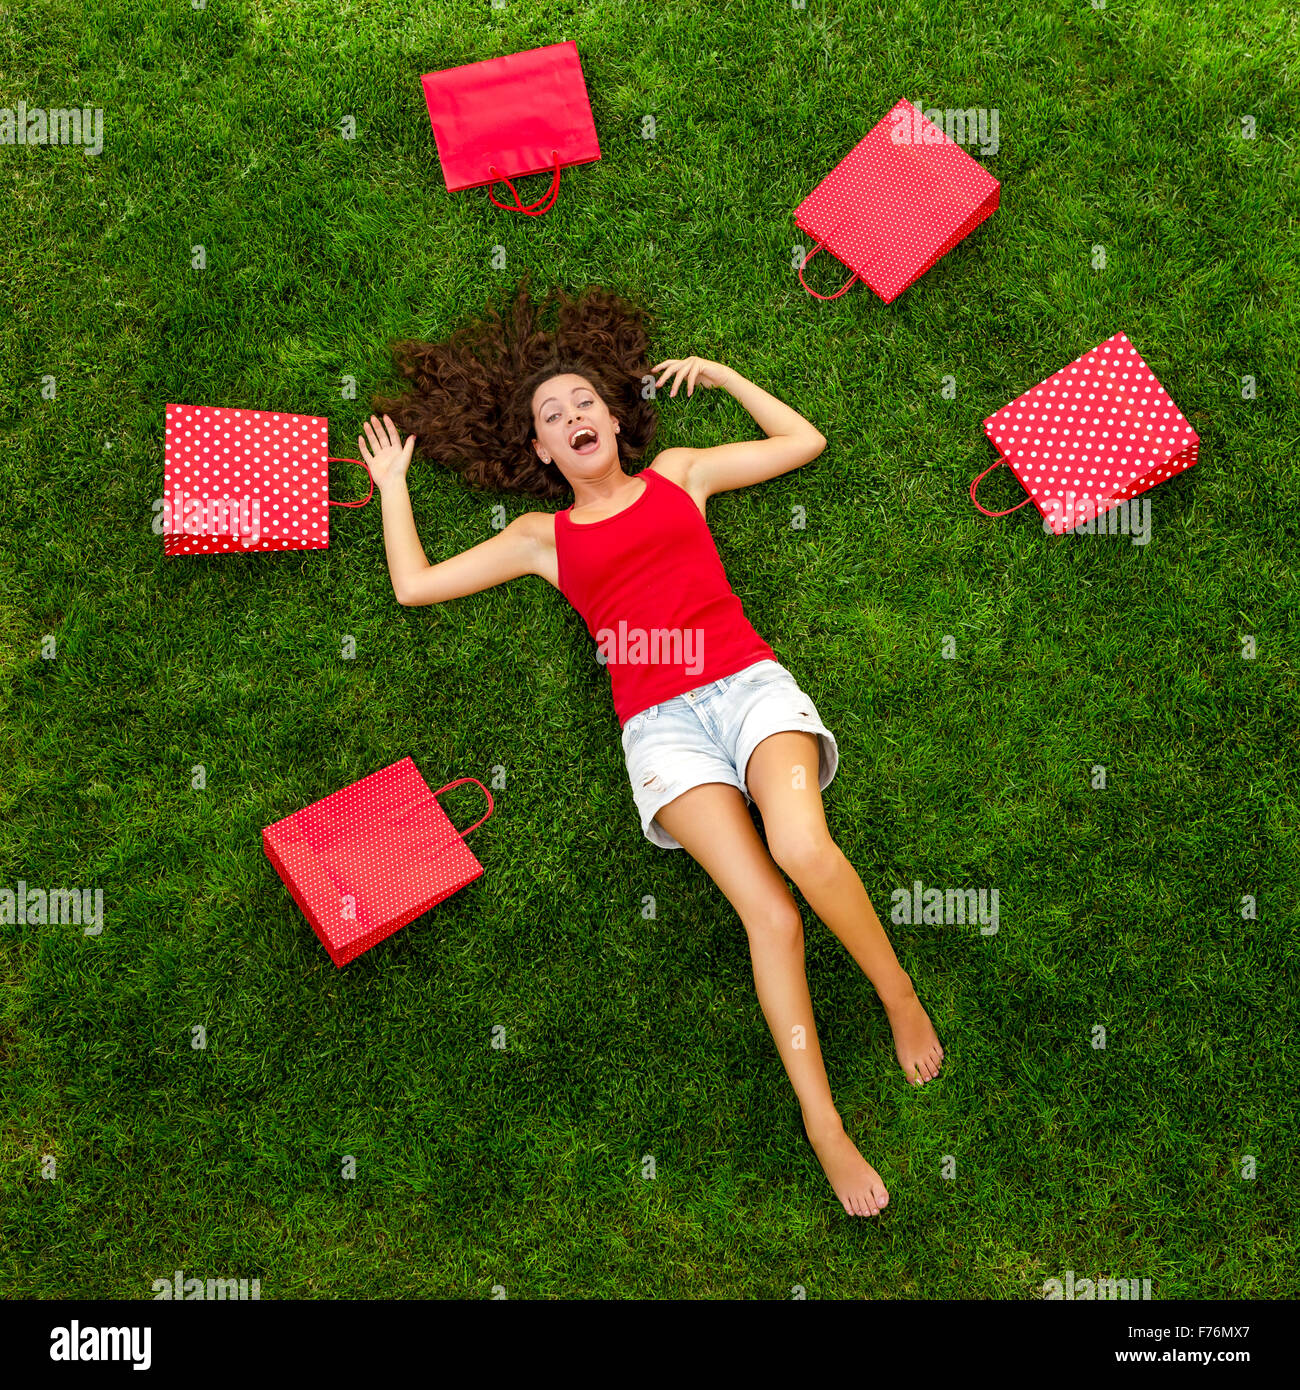 Schöne und glückliche junge Frau liegend auf dem Rasen, umgeben von roten Geschenk-Taschen Stockfoto